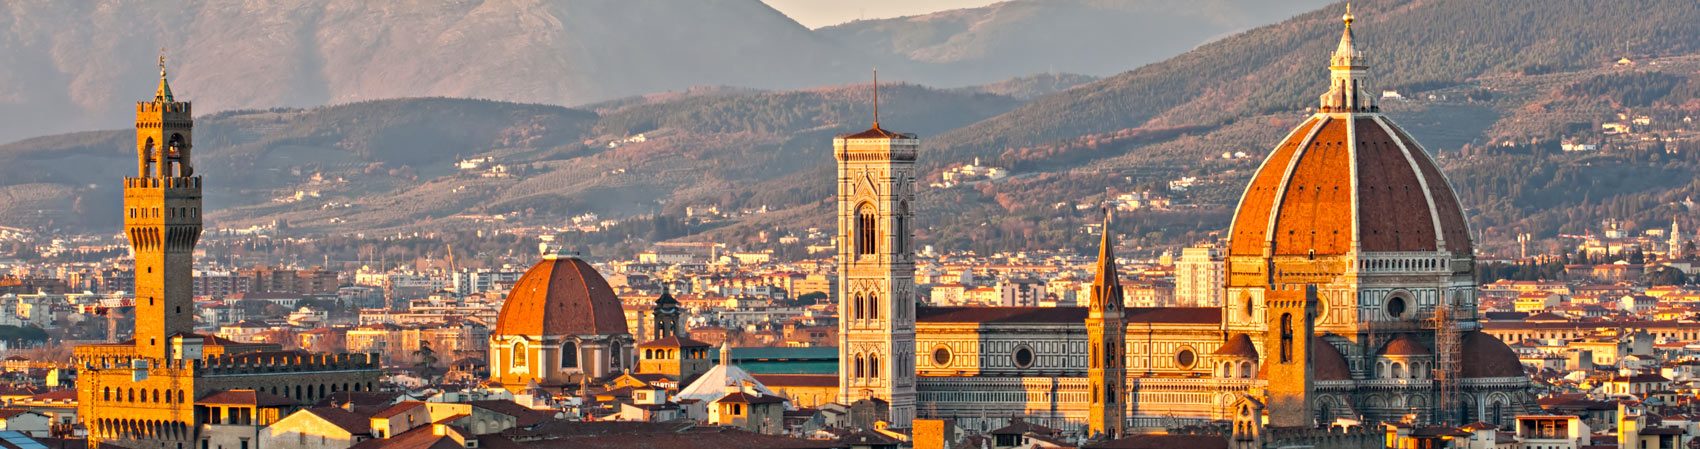 Catedral de Florencia - vista de Santa Maria del Fiore